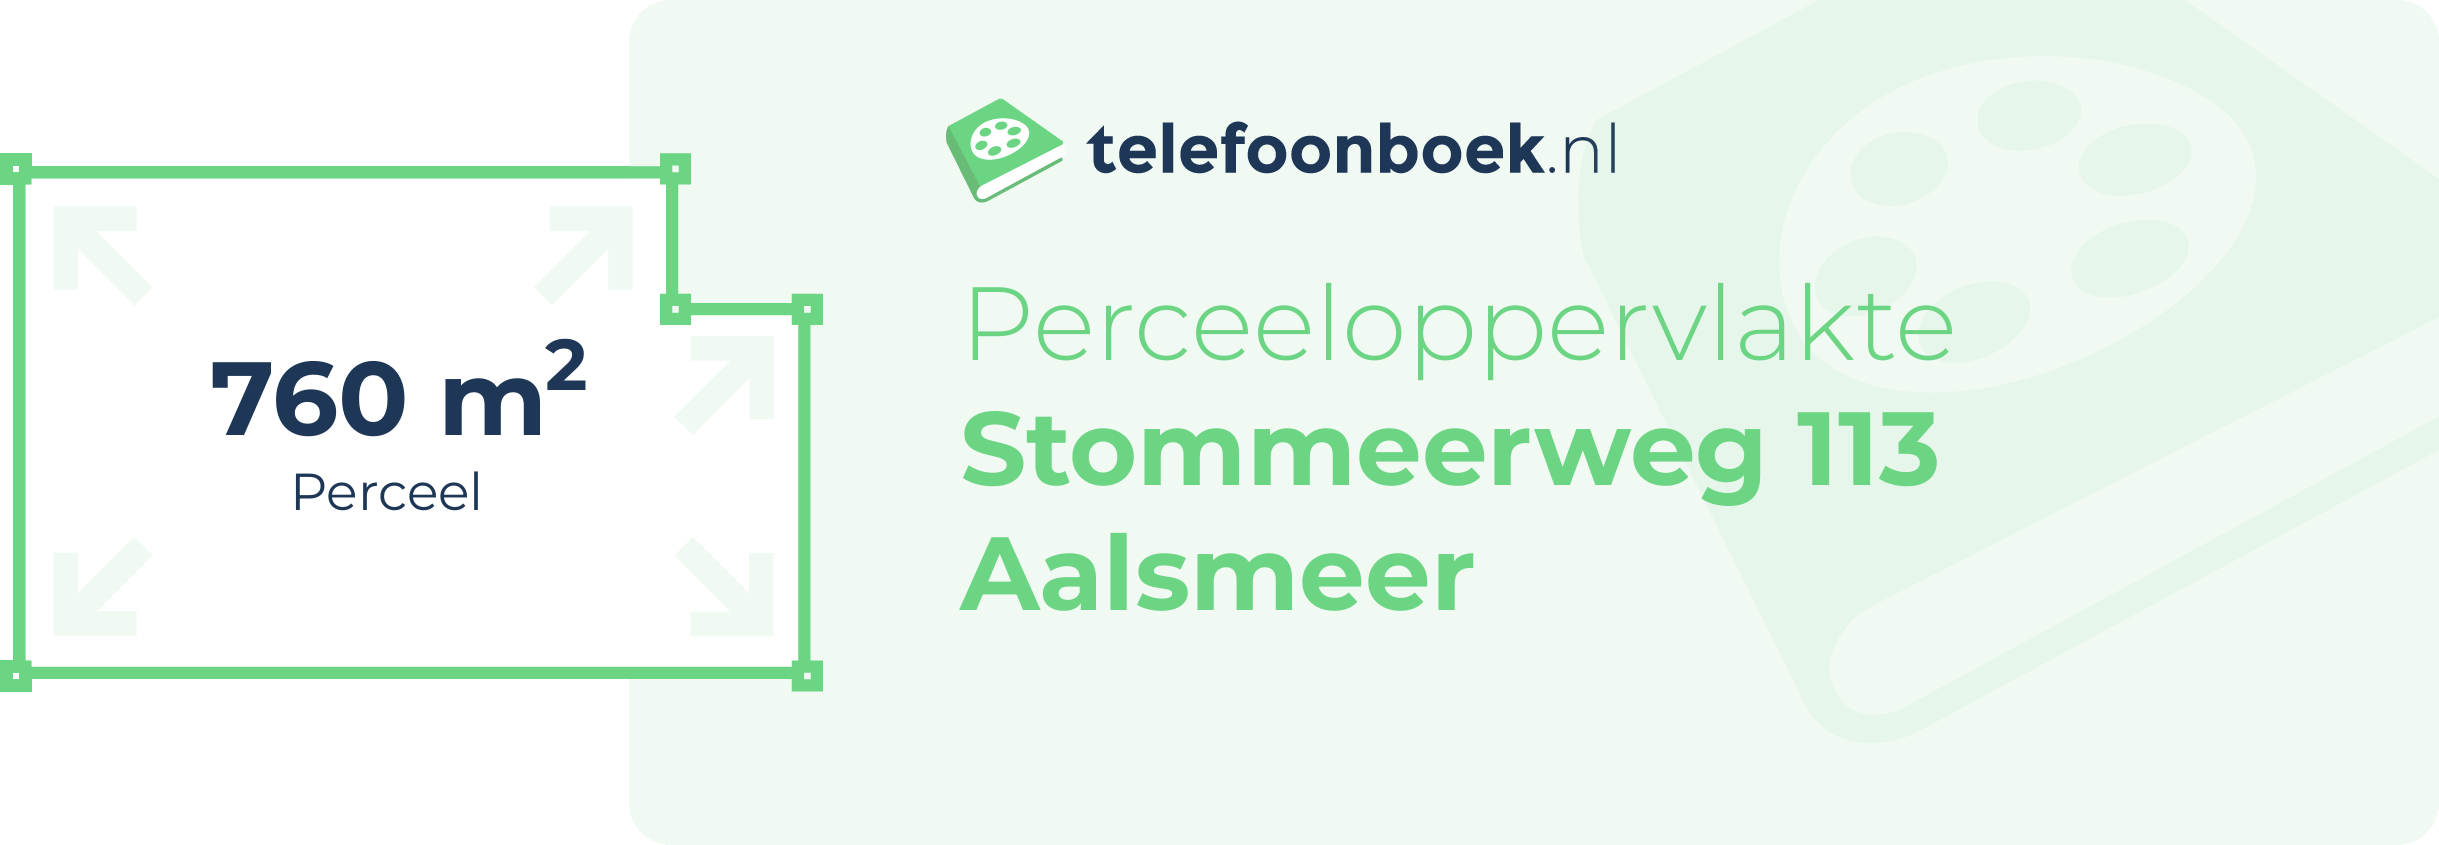 Perceeloppervlakte Stommeerweg 113 Aalsmeer